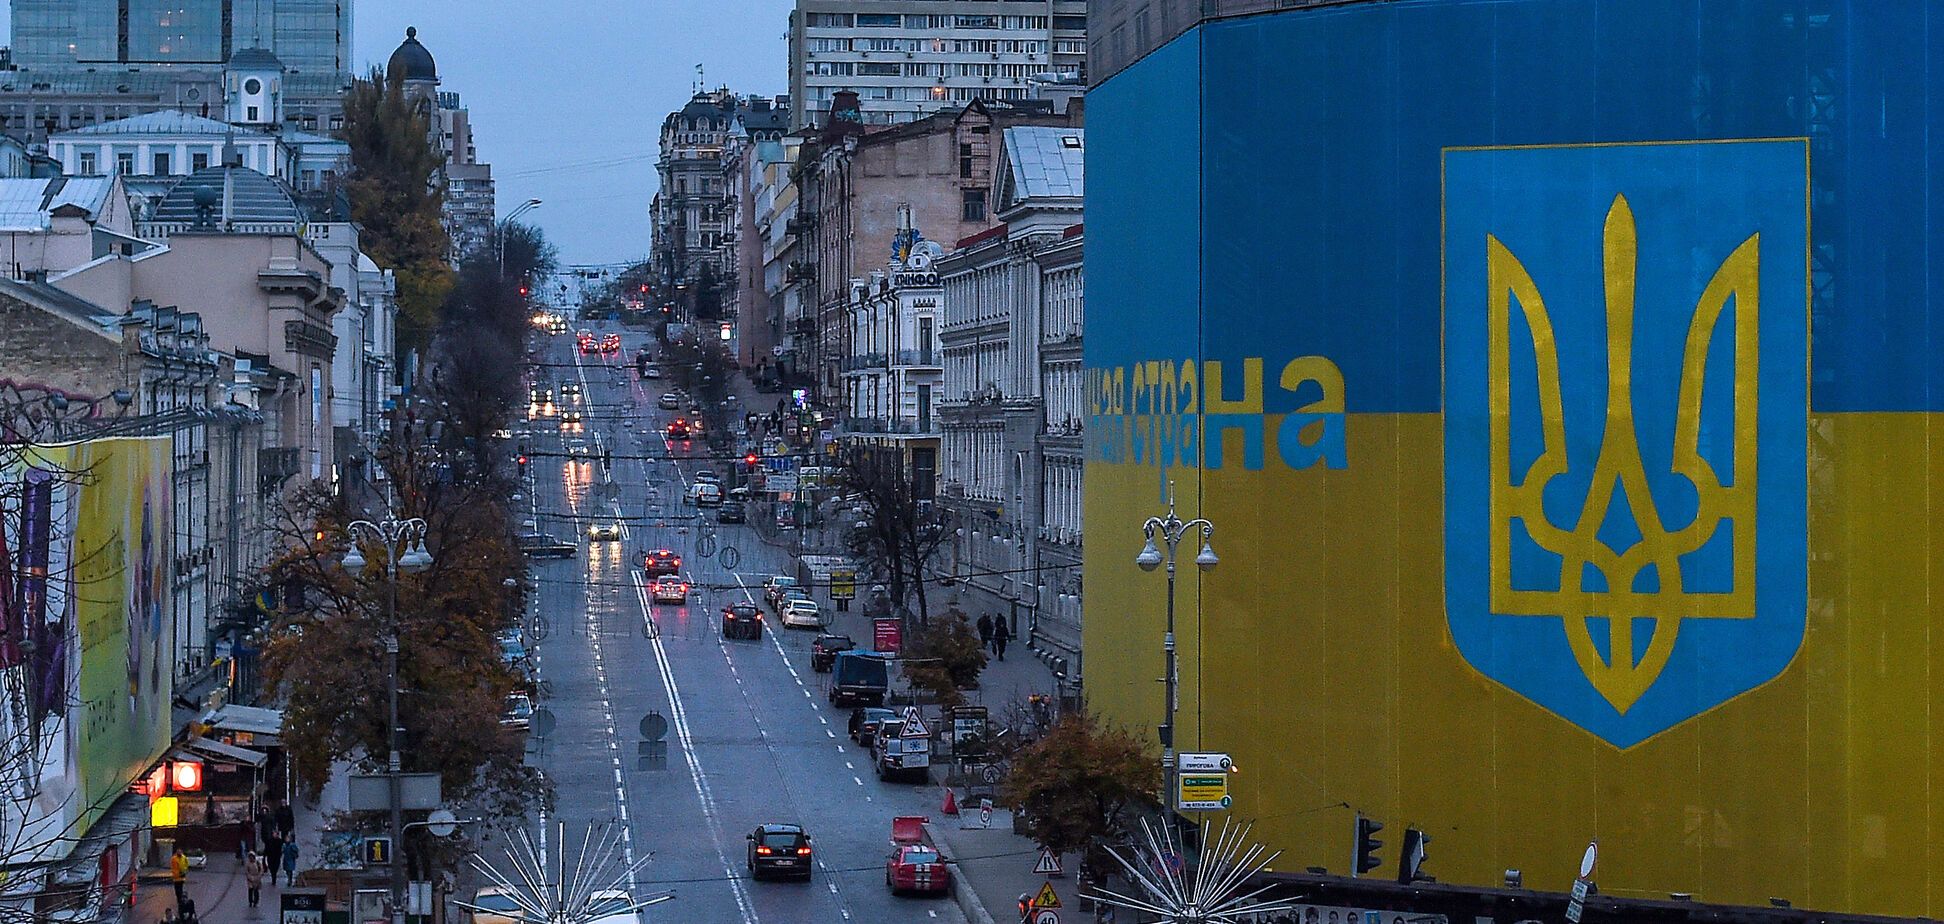 Киев поднялся в рейтинге самых дорогих городов мира